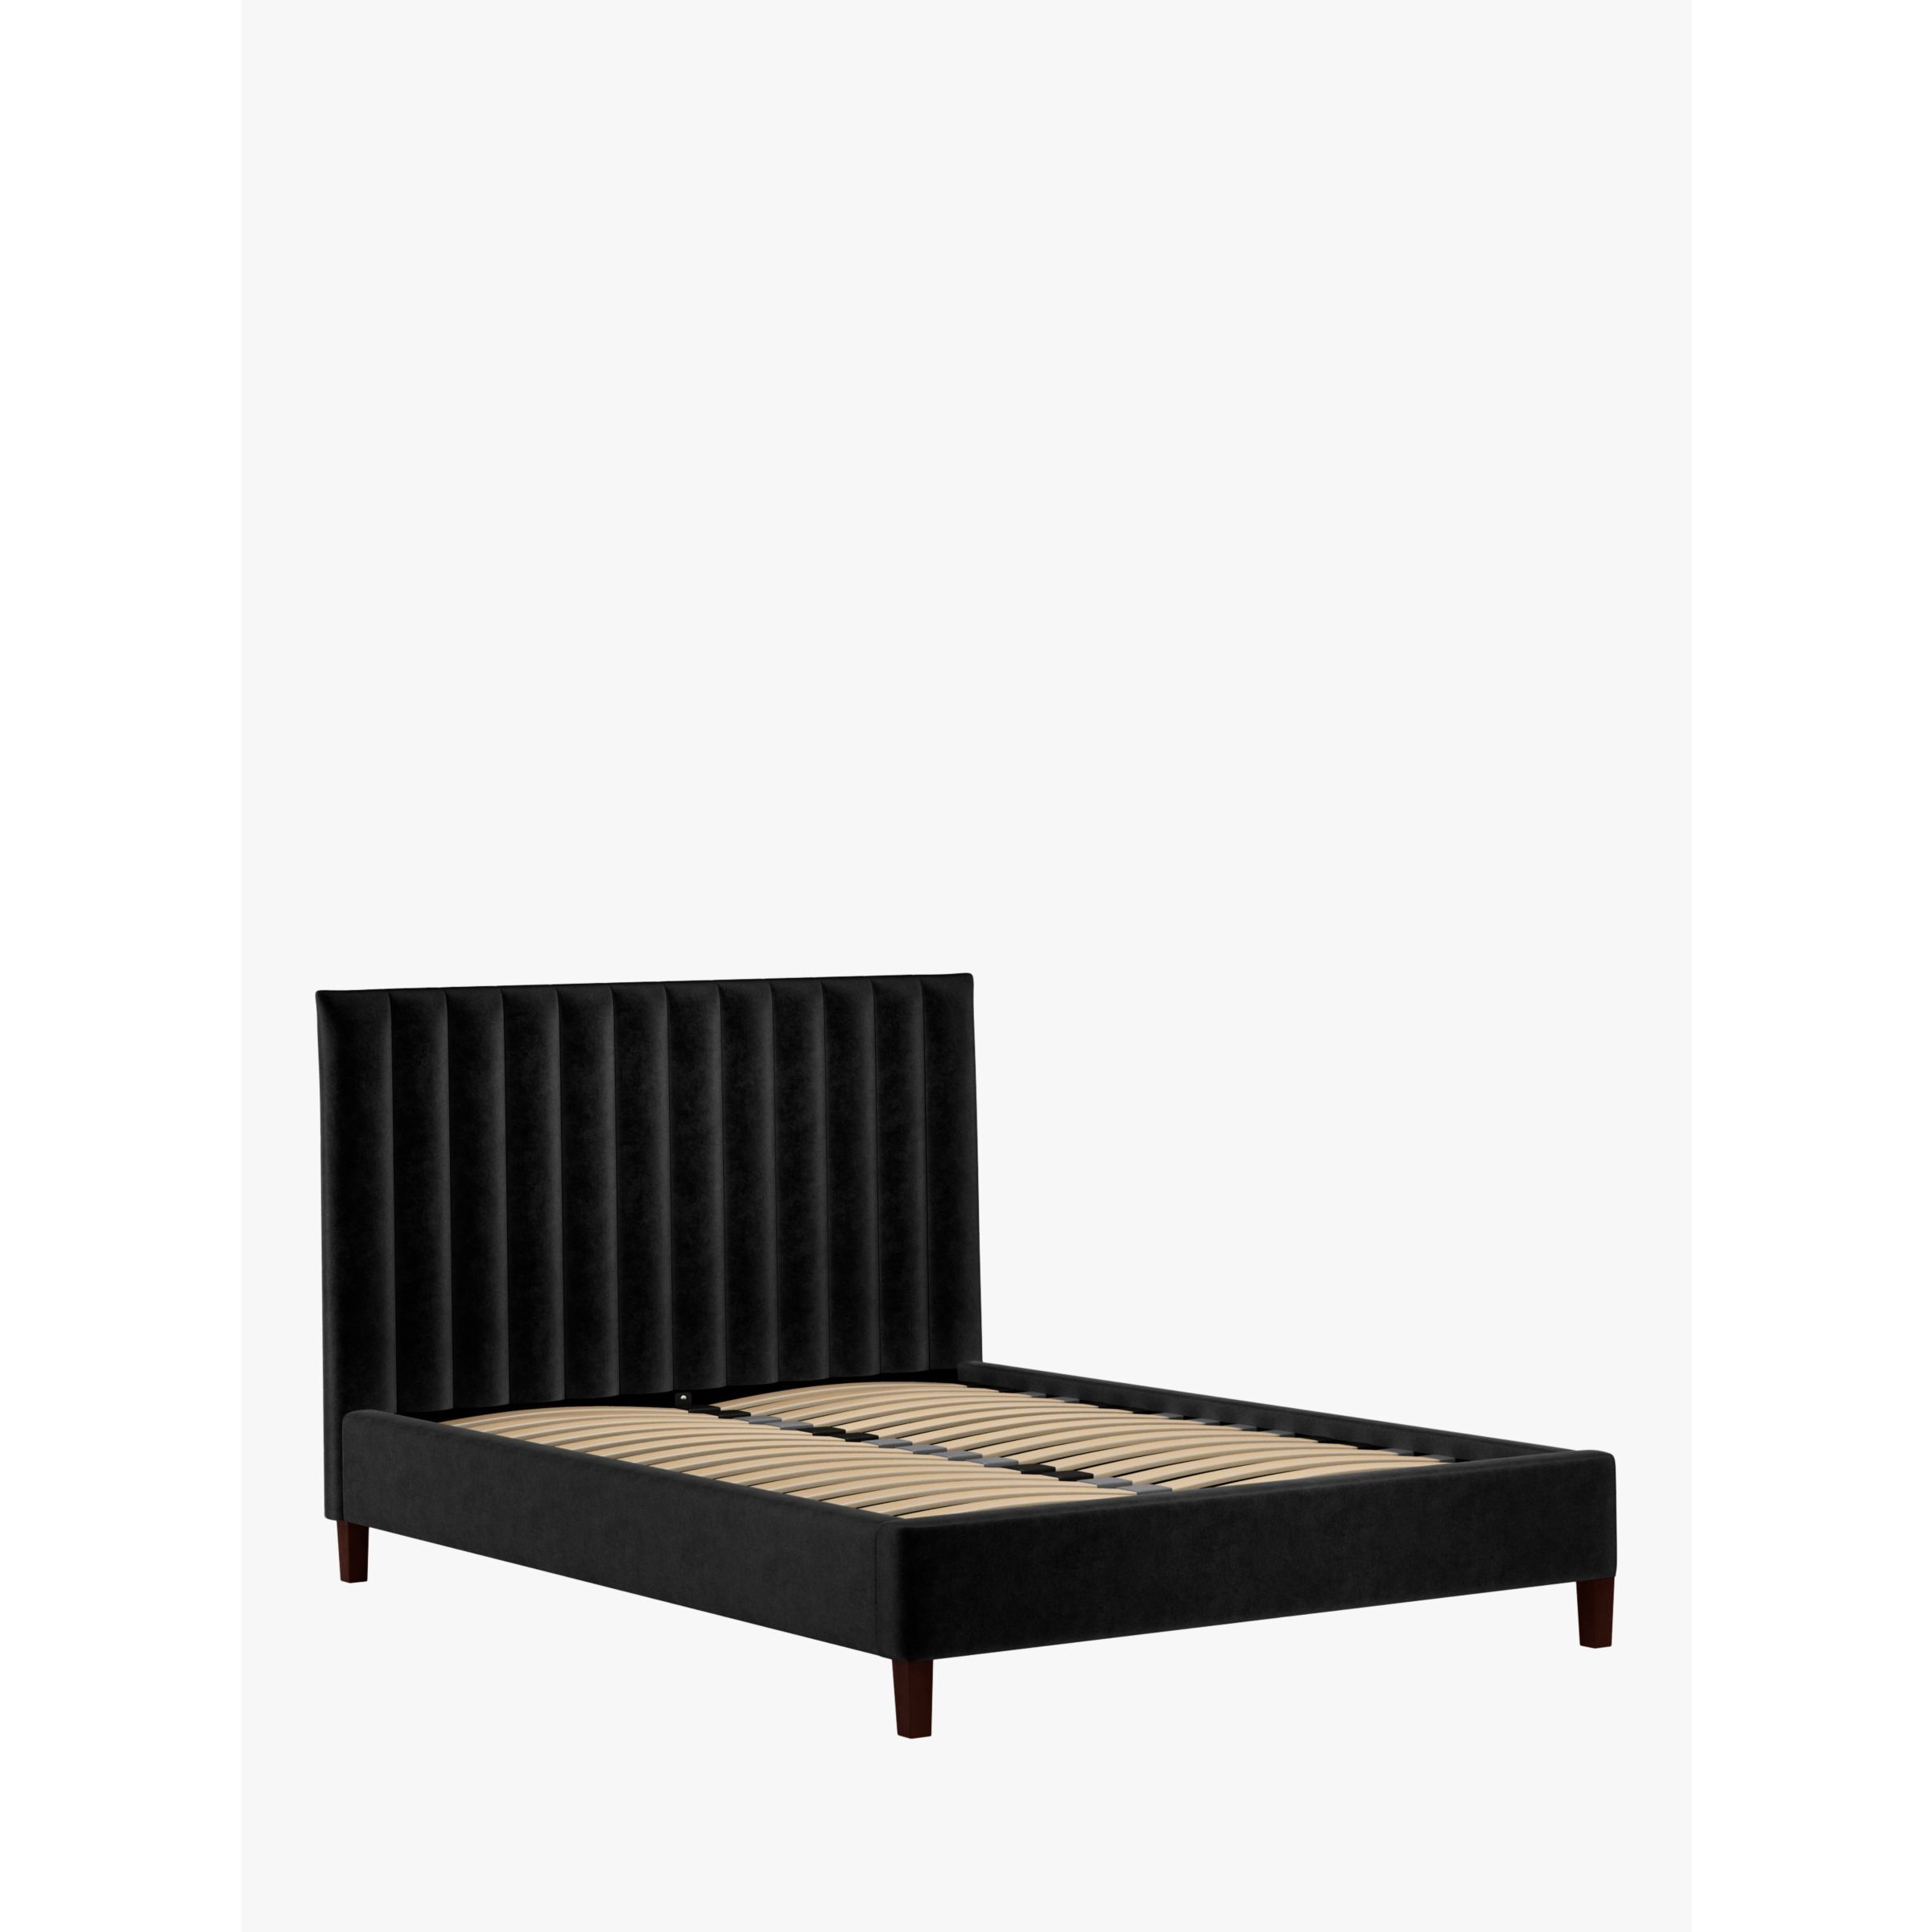 John Lewis Fluted Upholstered Bed Frame, King Size - image 1